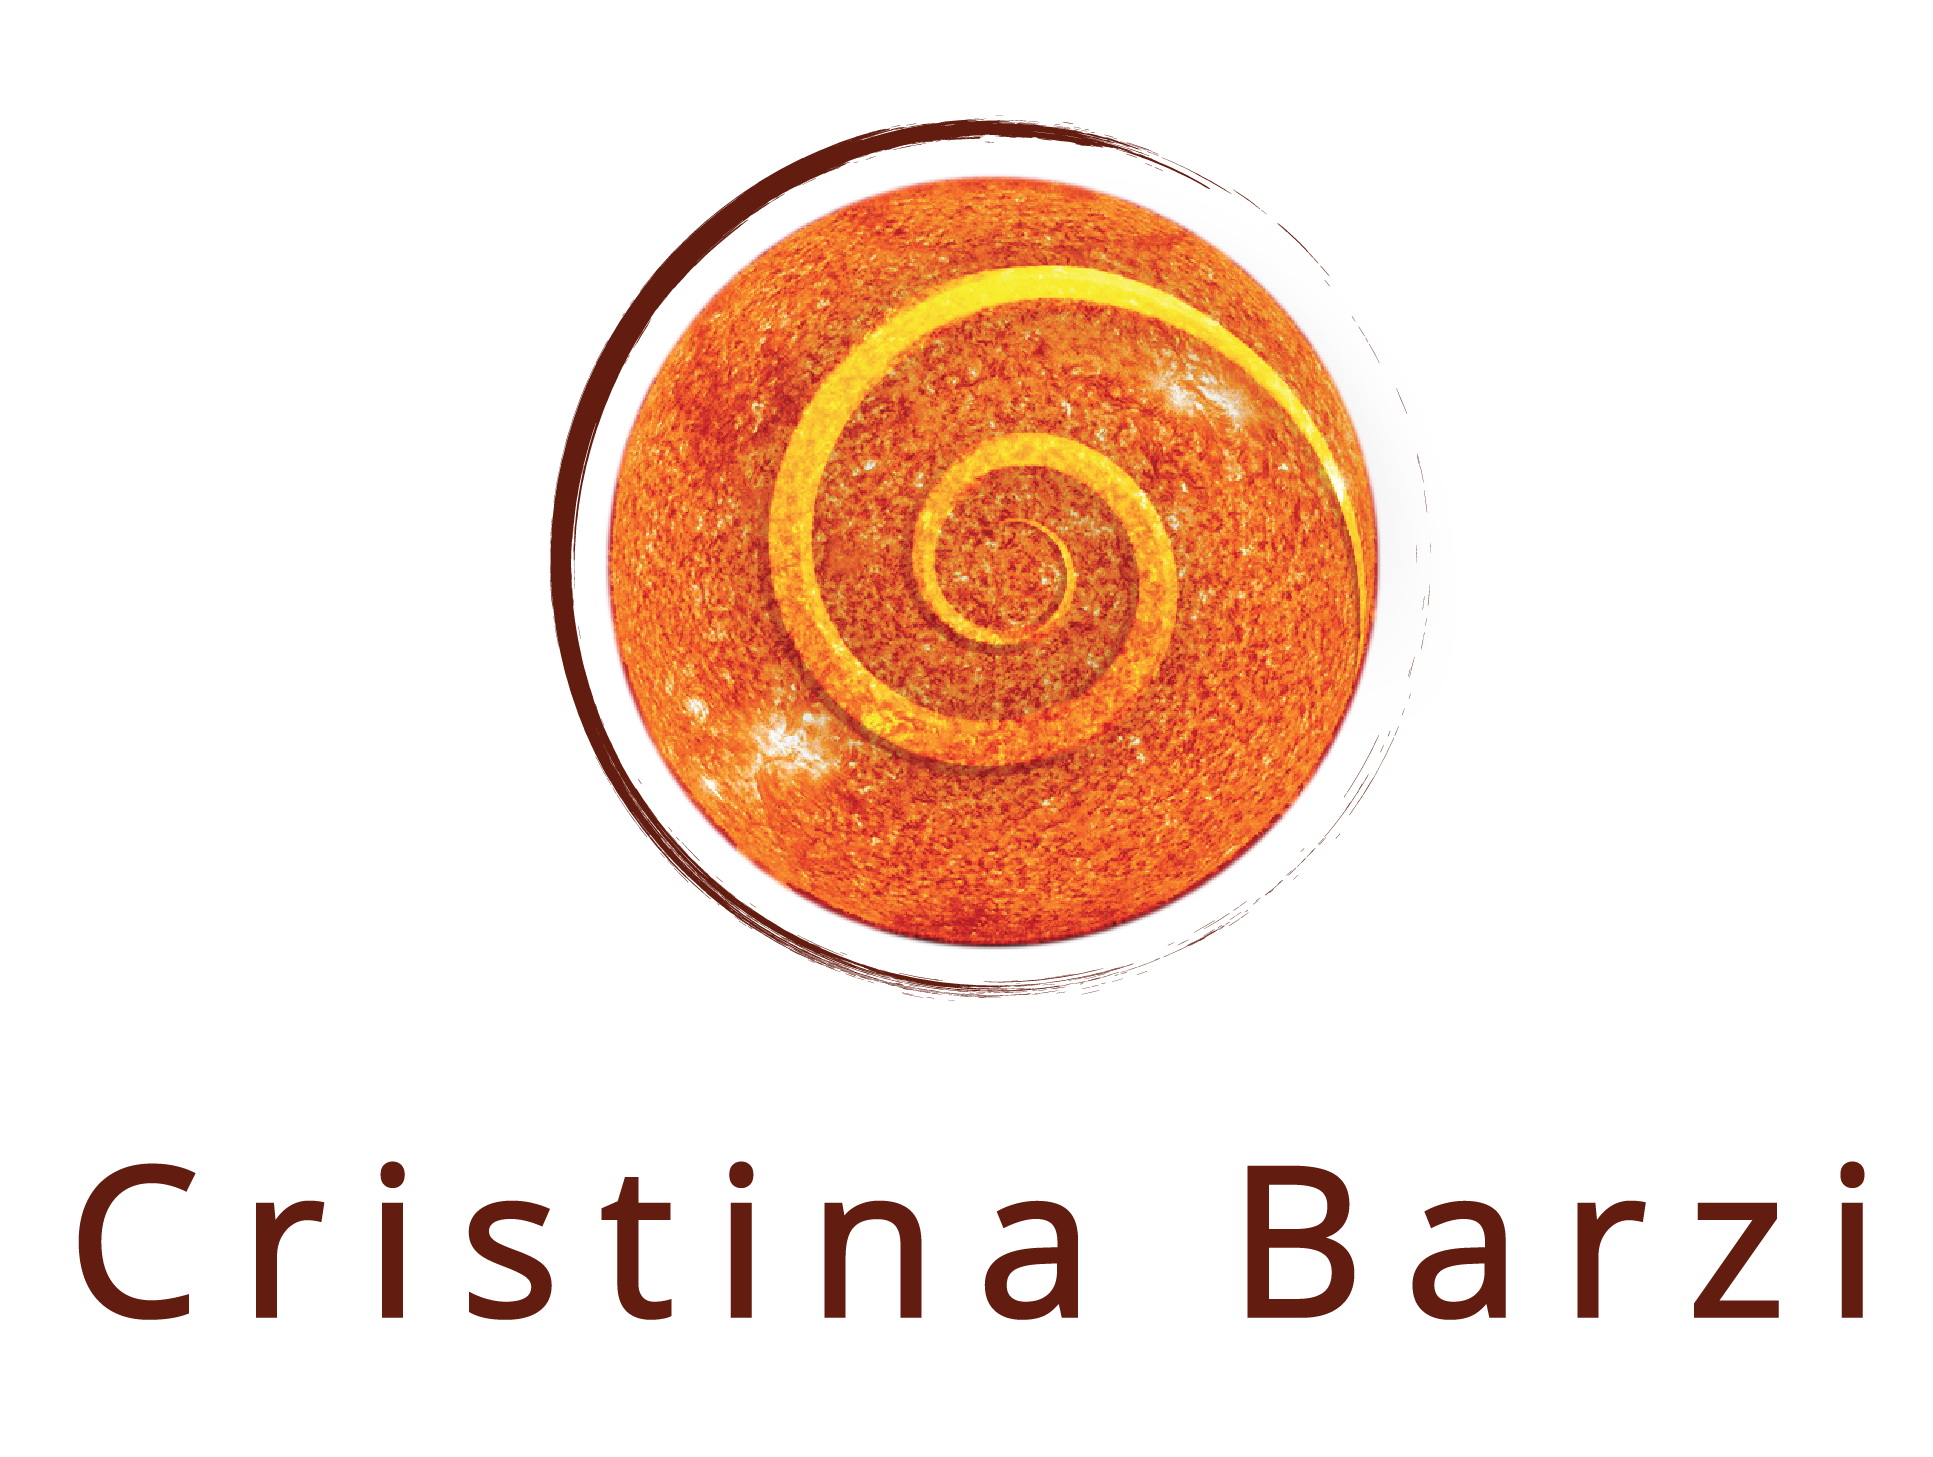 Cristina Barzi